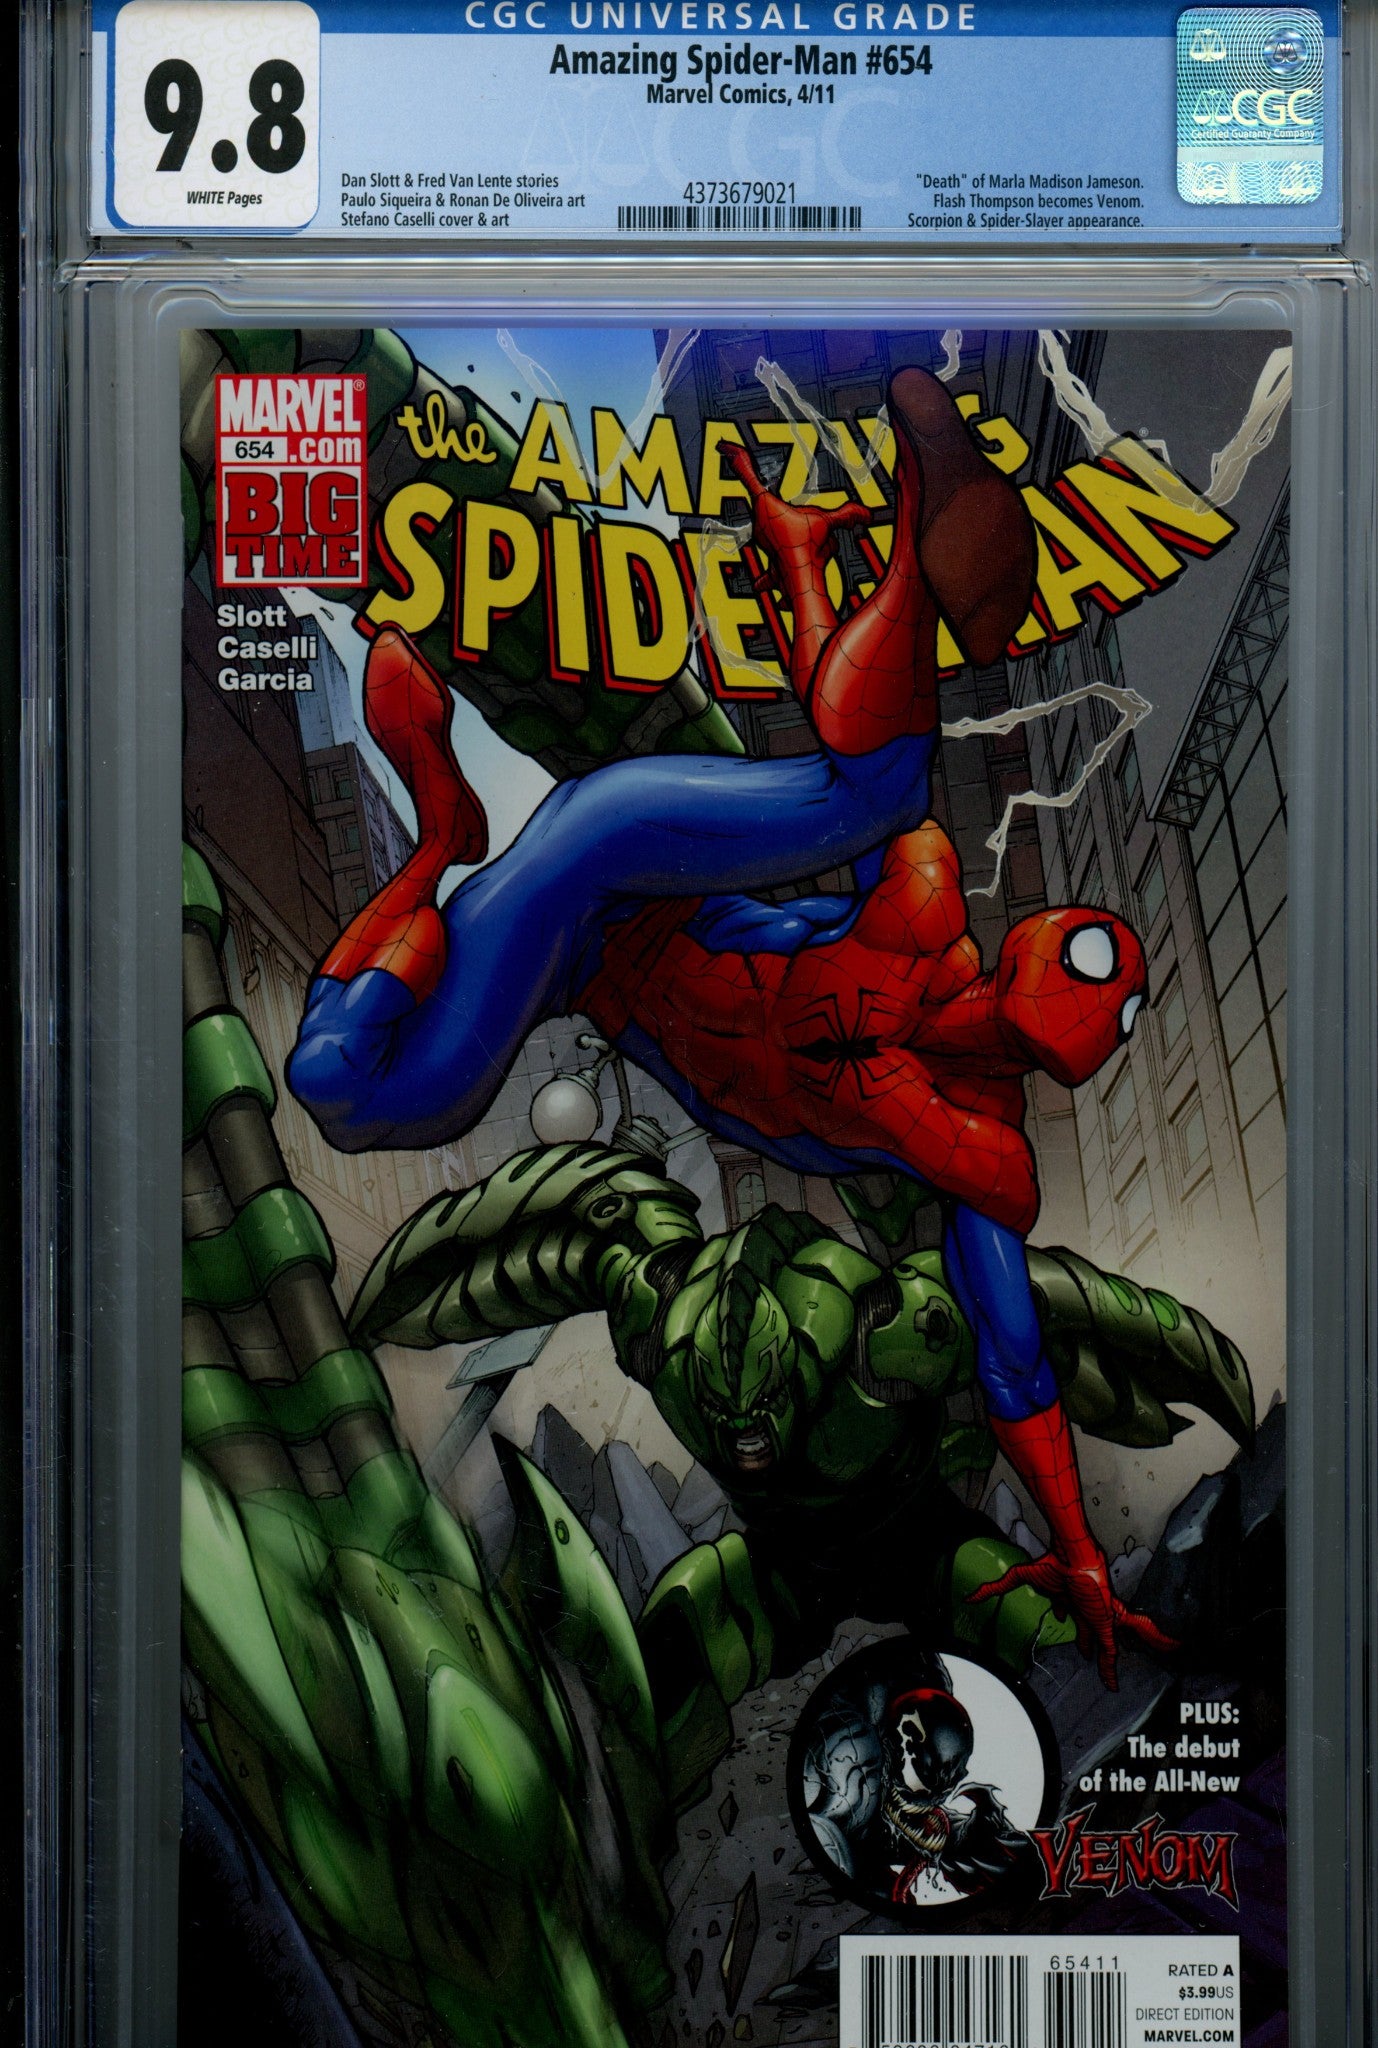 The Amazing Spider-Man Vol 2 654 CGC 9.8 (NM/M) (2011) 